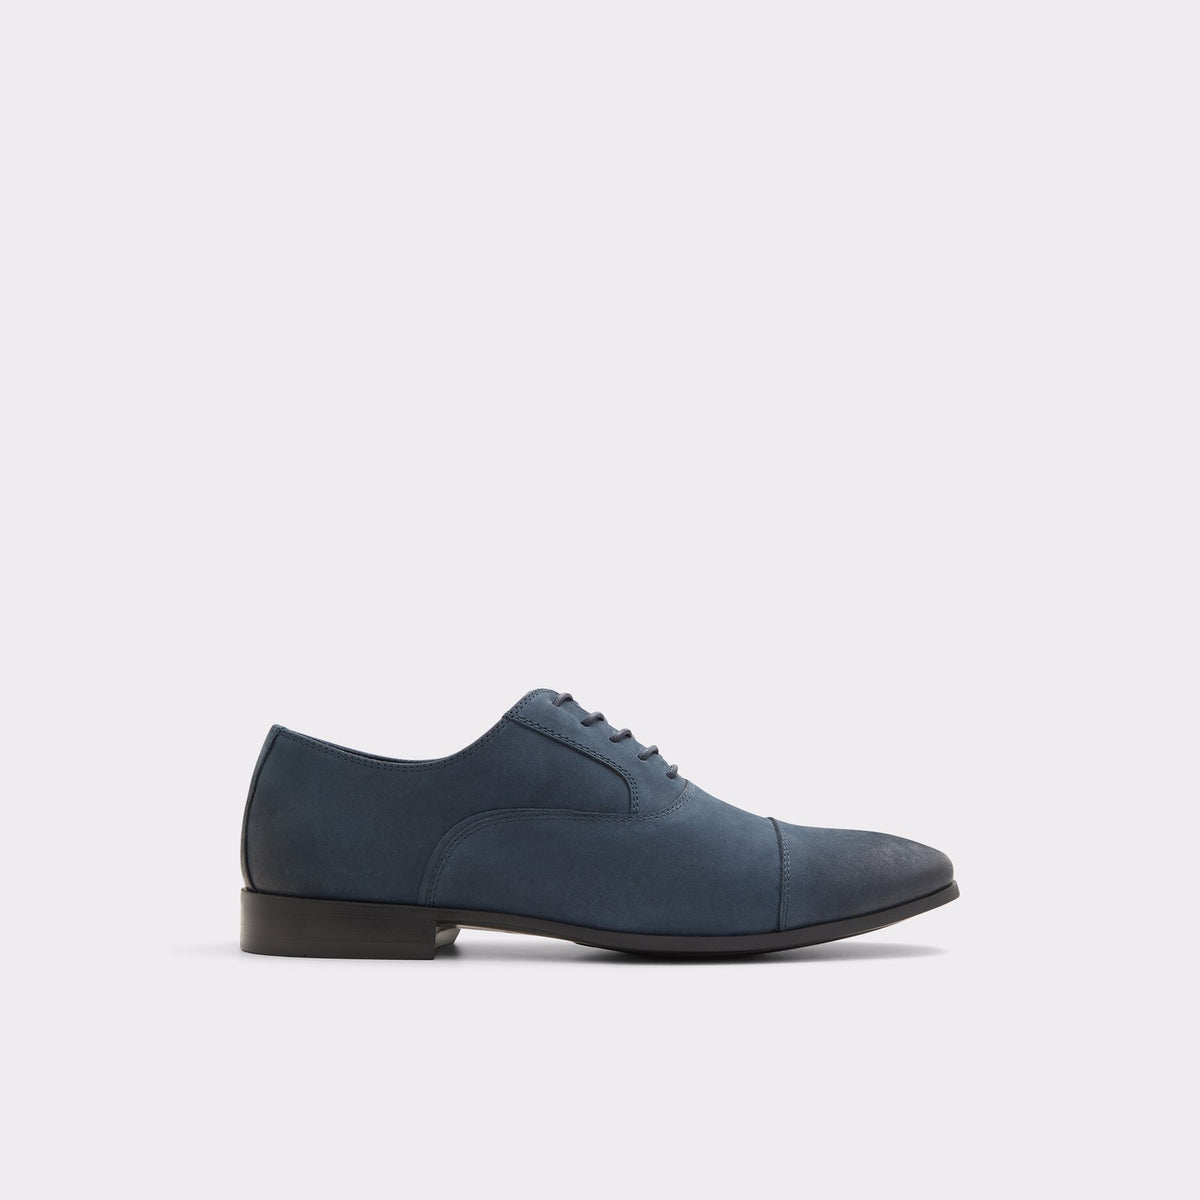 Aldo Men's Lace Up Oxford Shoe Albeck (Navy) – ALDO Shoes UK